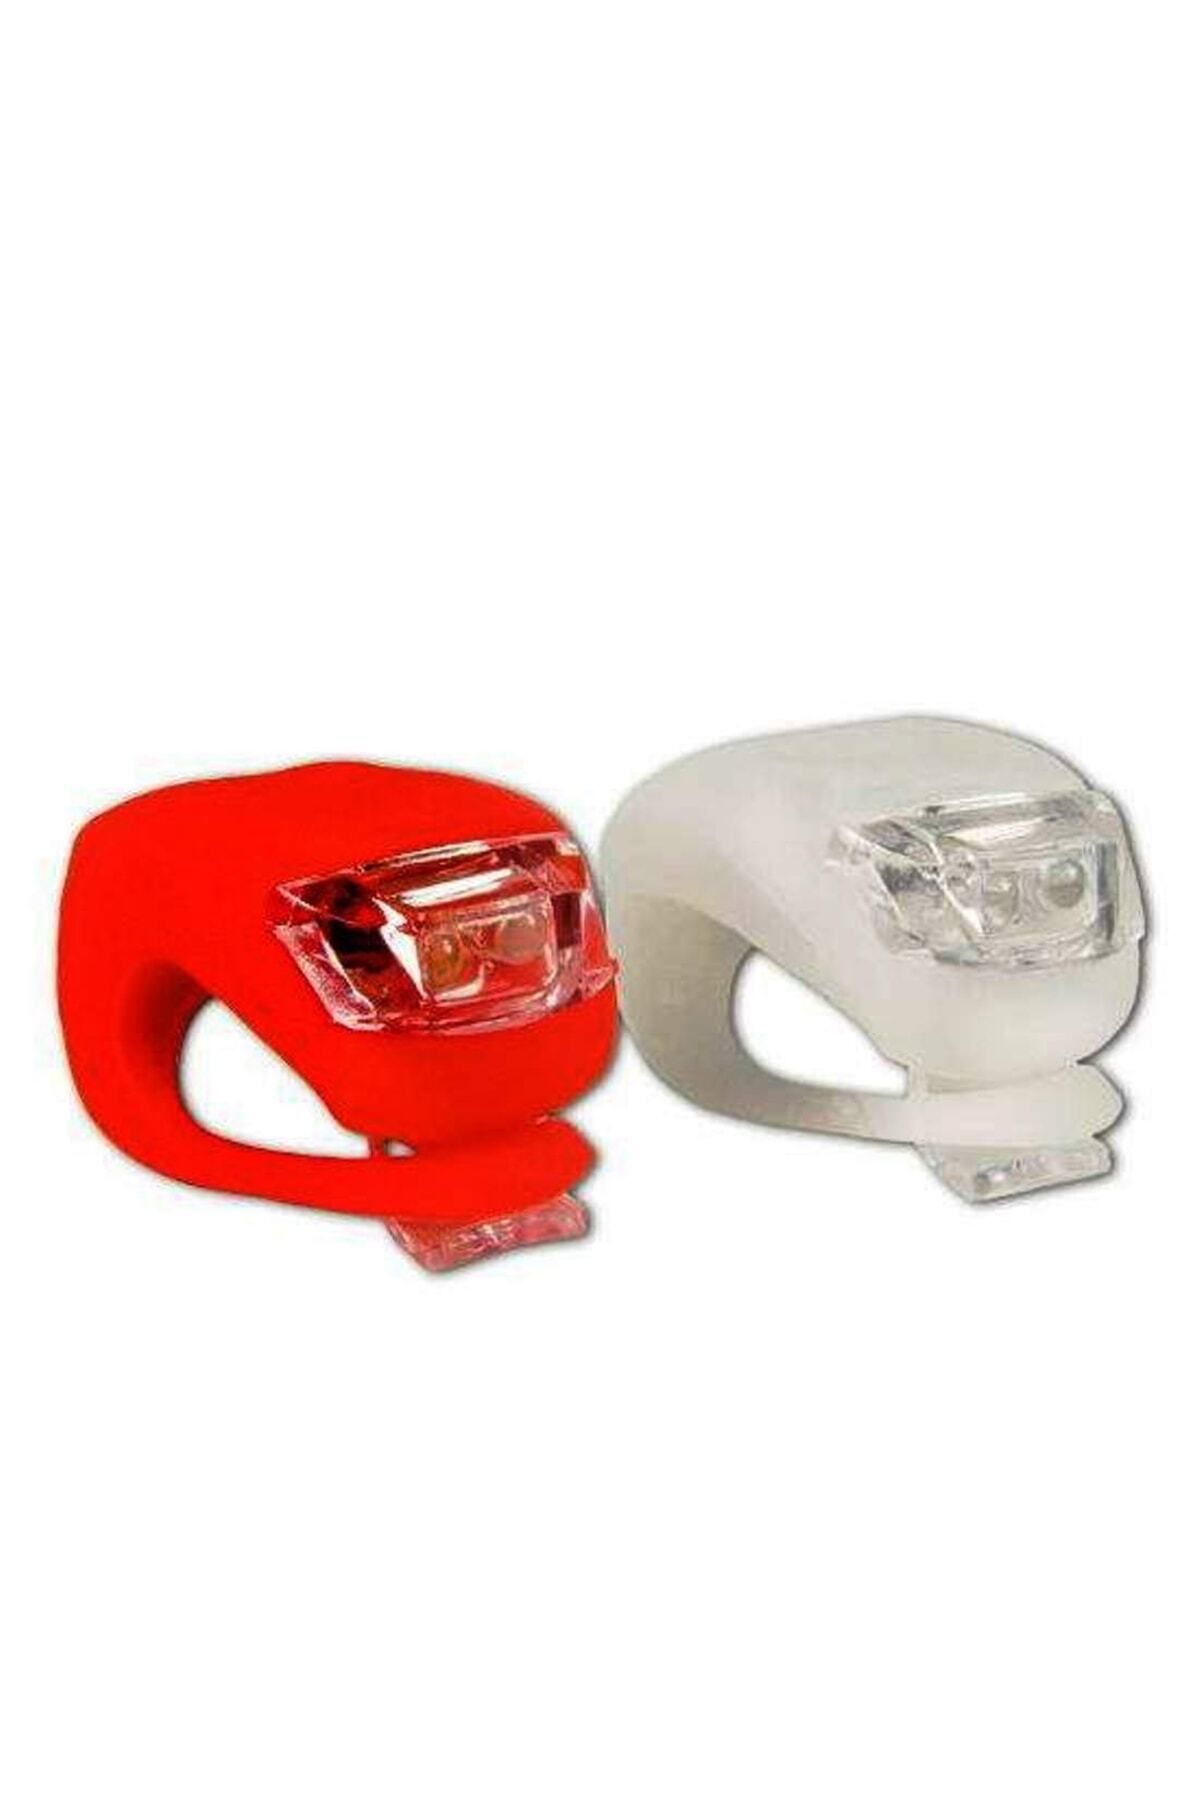 hırdawhat Bisiklet Çakar Lamba Seti - Silikon - Kırmızı Beyaz Işık Silikon - Kolay Bağlantı - Su Geçirmez